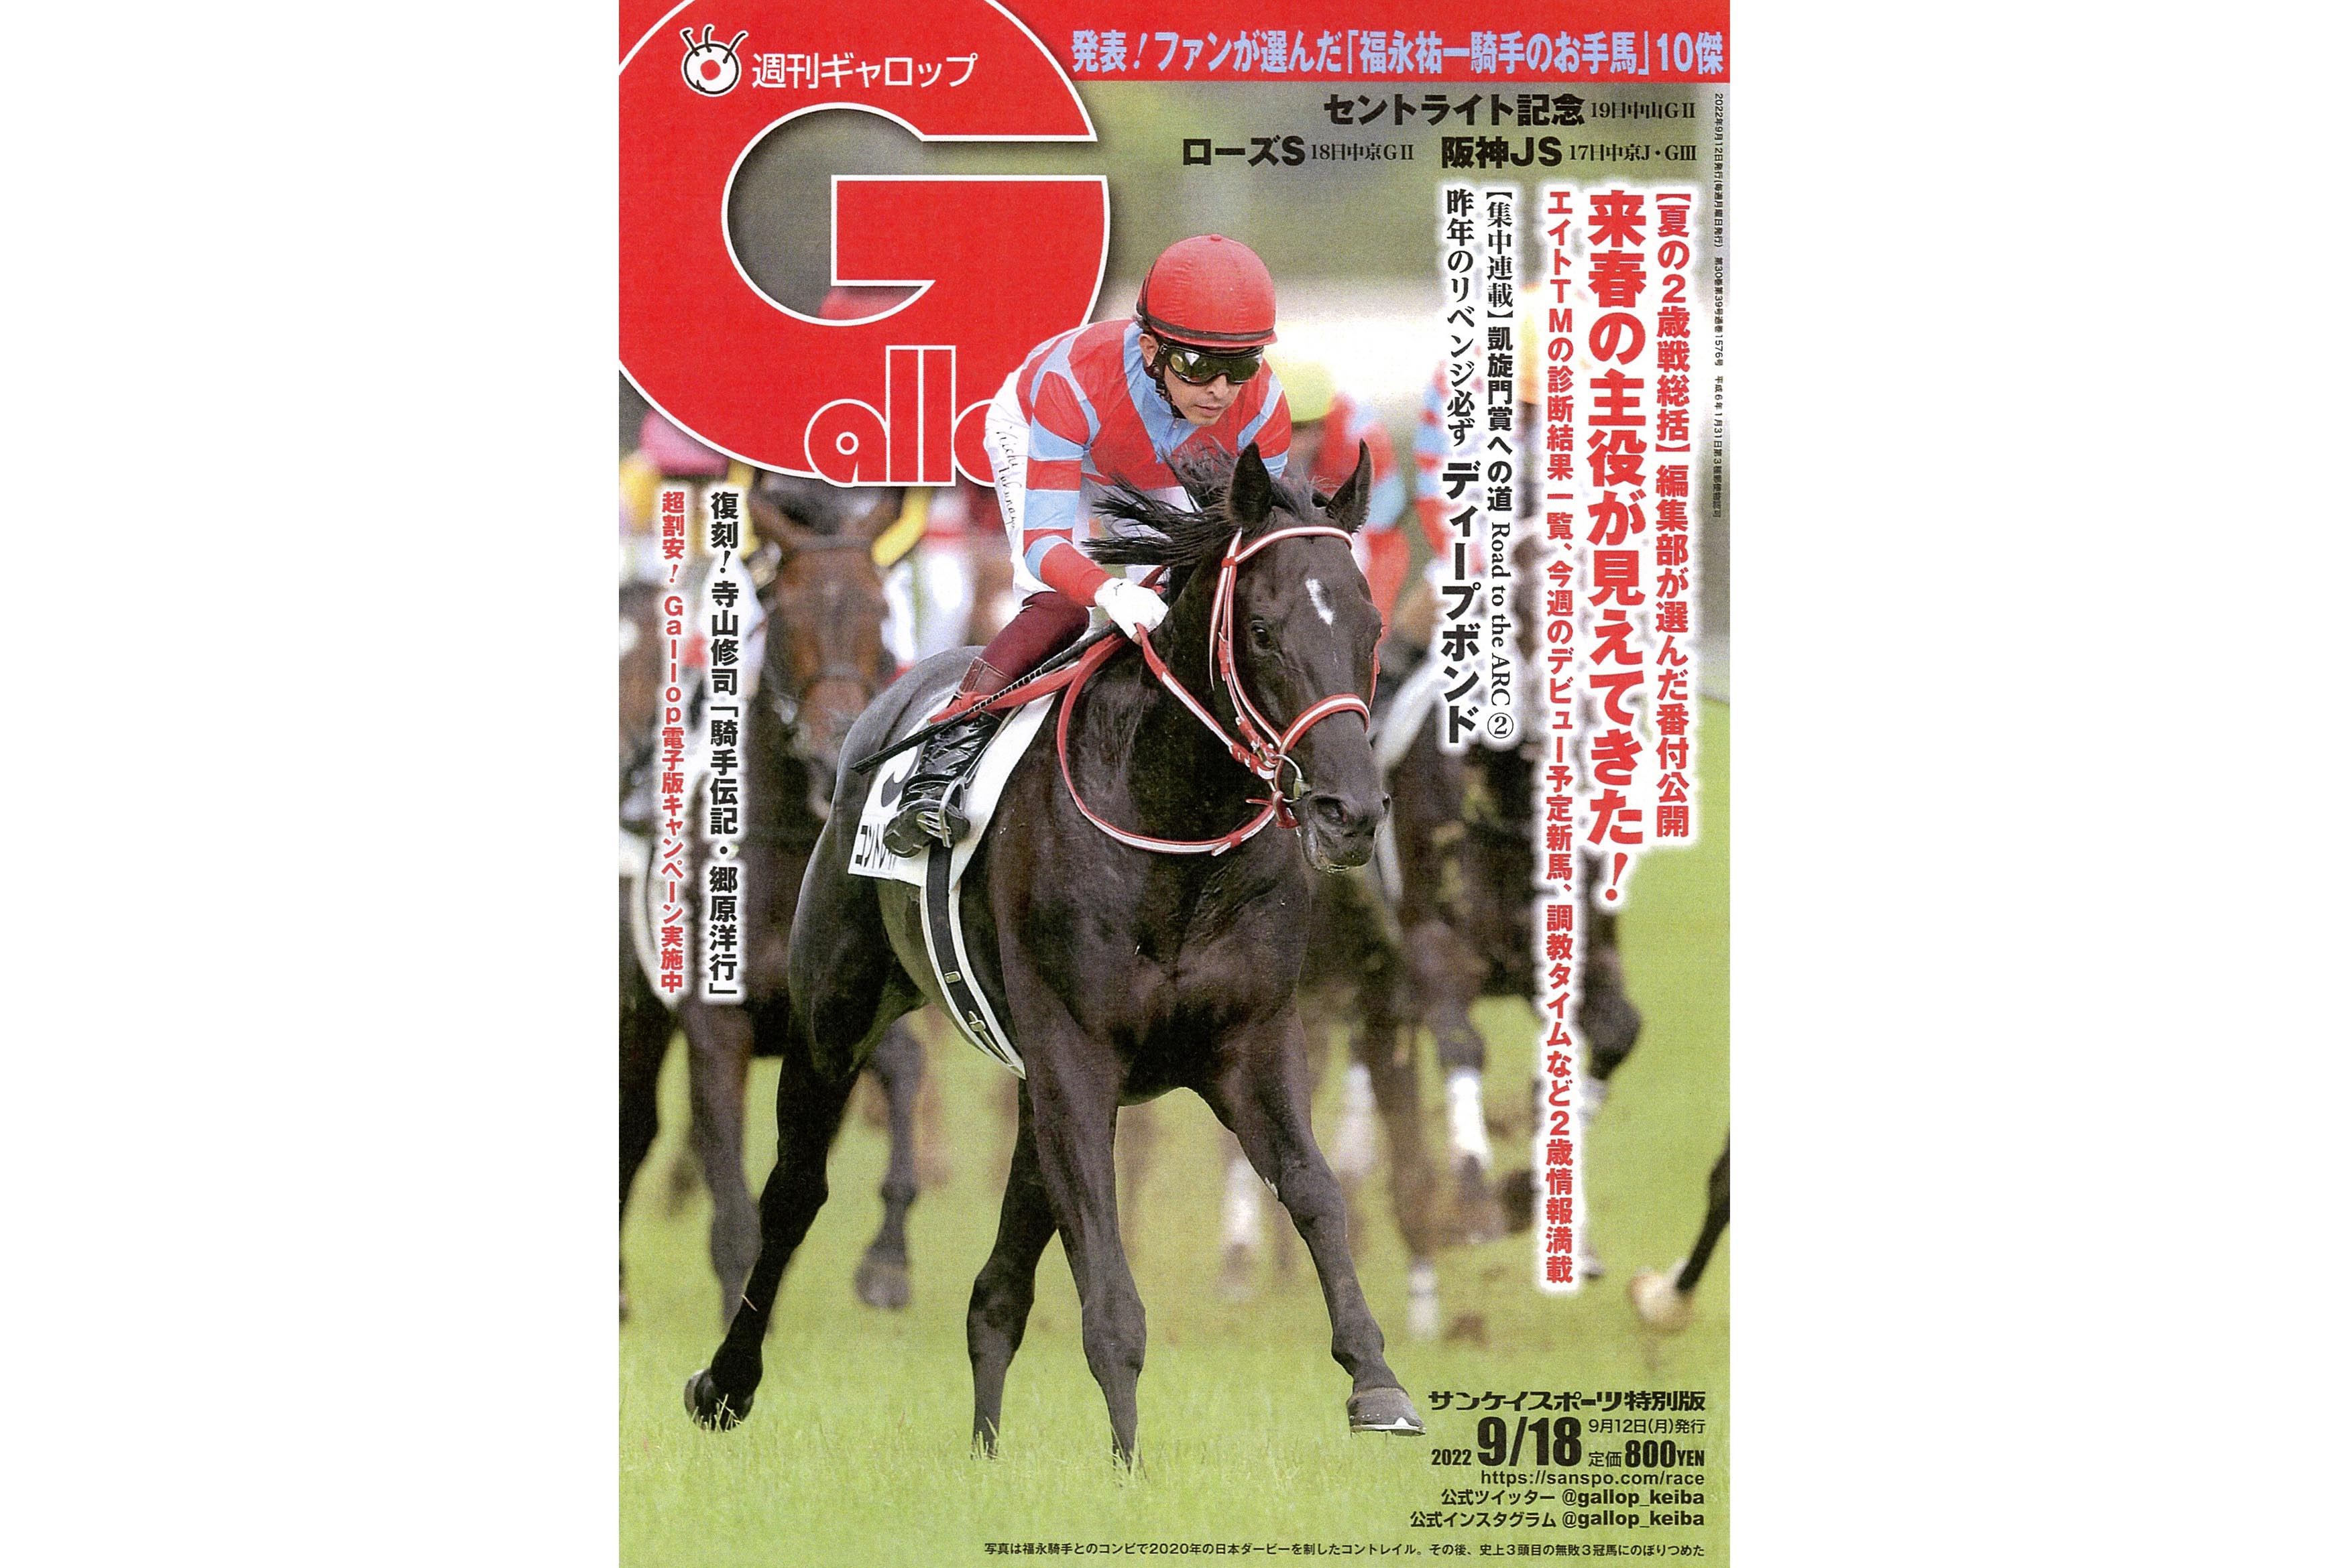 週刊ギャロップ最新号 競馬雑誌 Gallop セントライト記念 ローズ